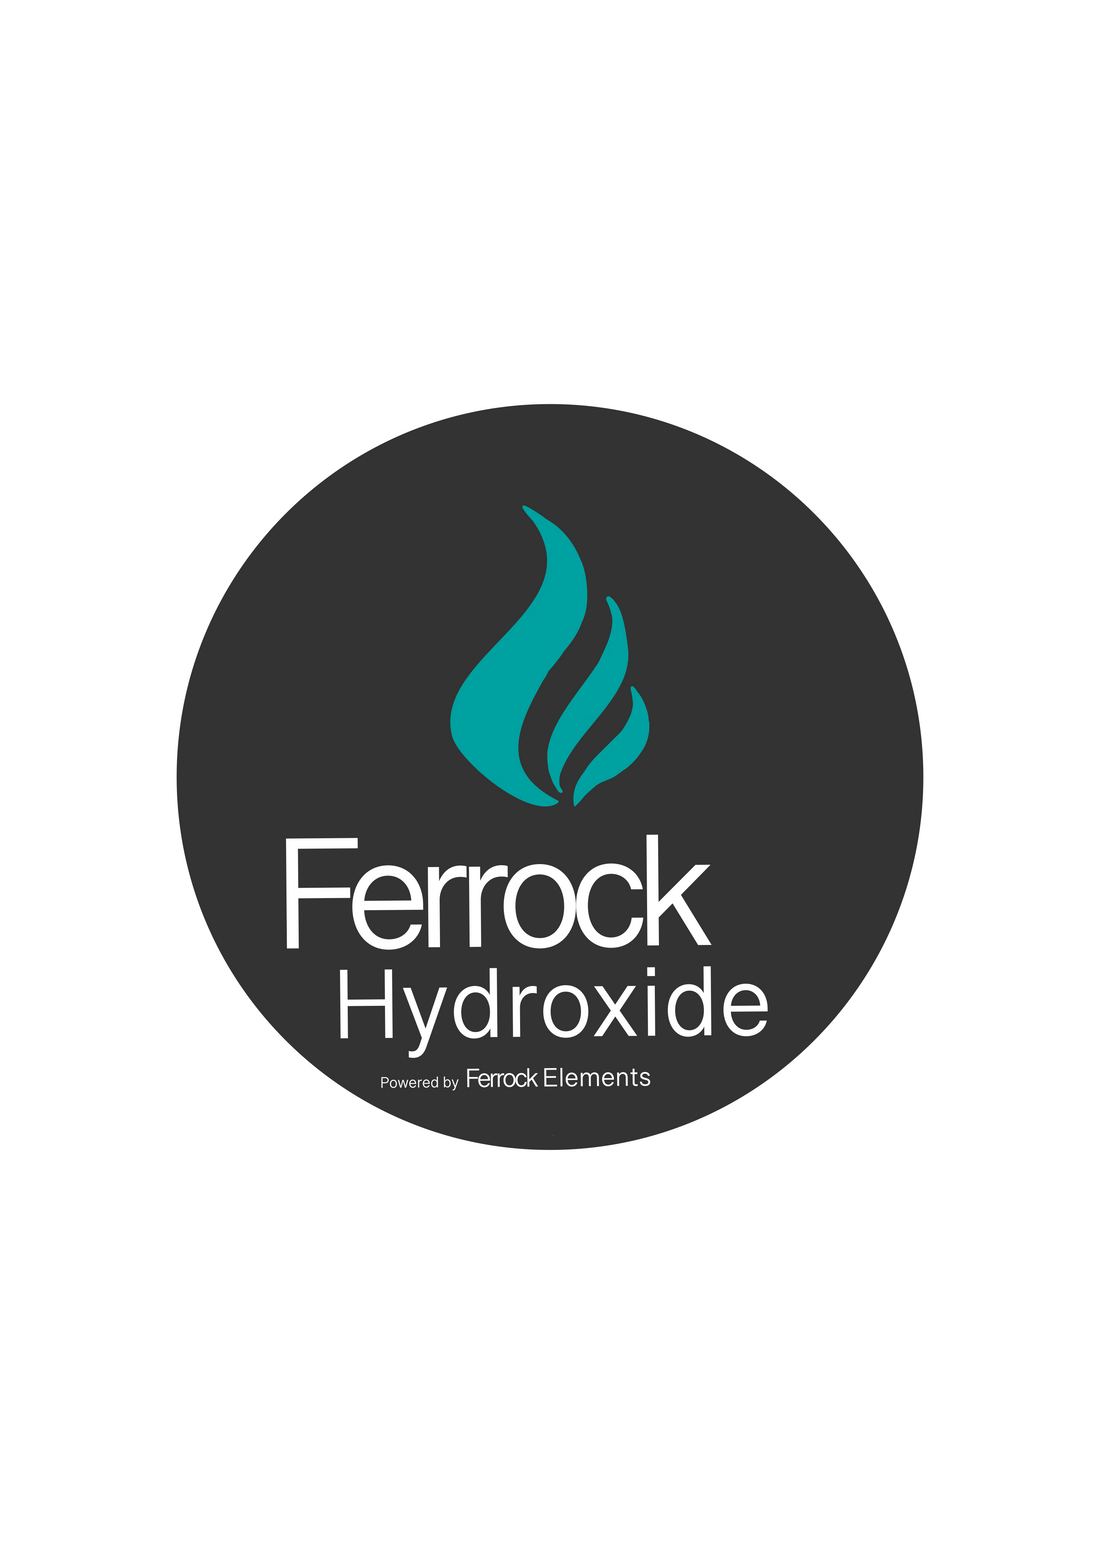 Ferrock Hydroxide Ferrock Elementsfarm